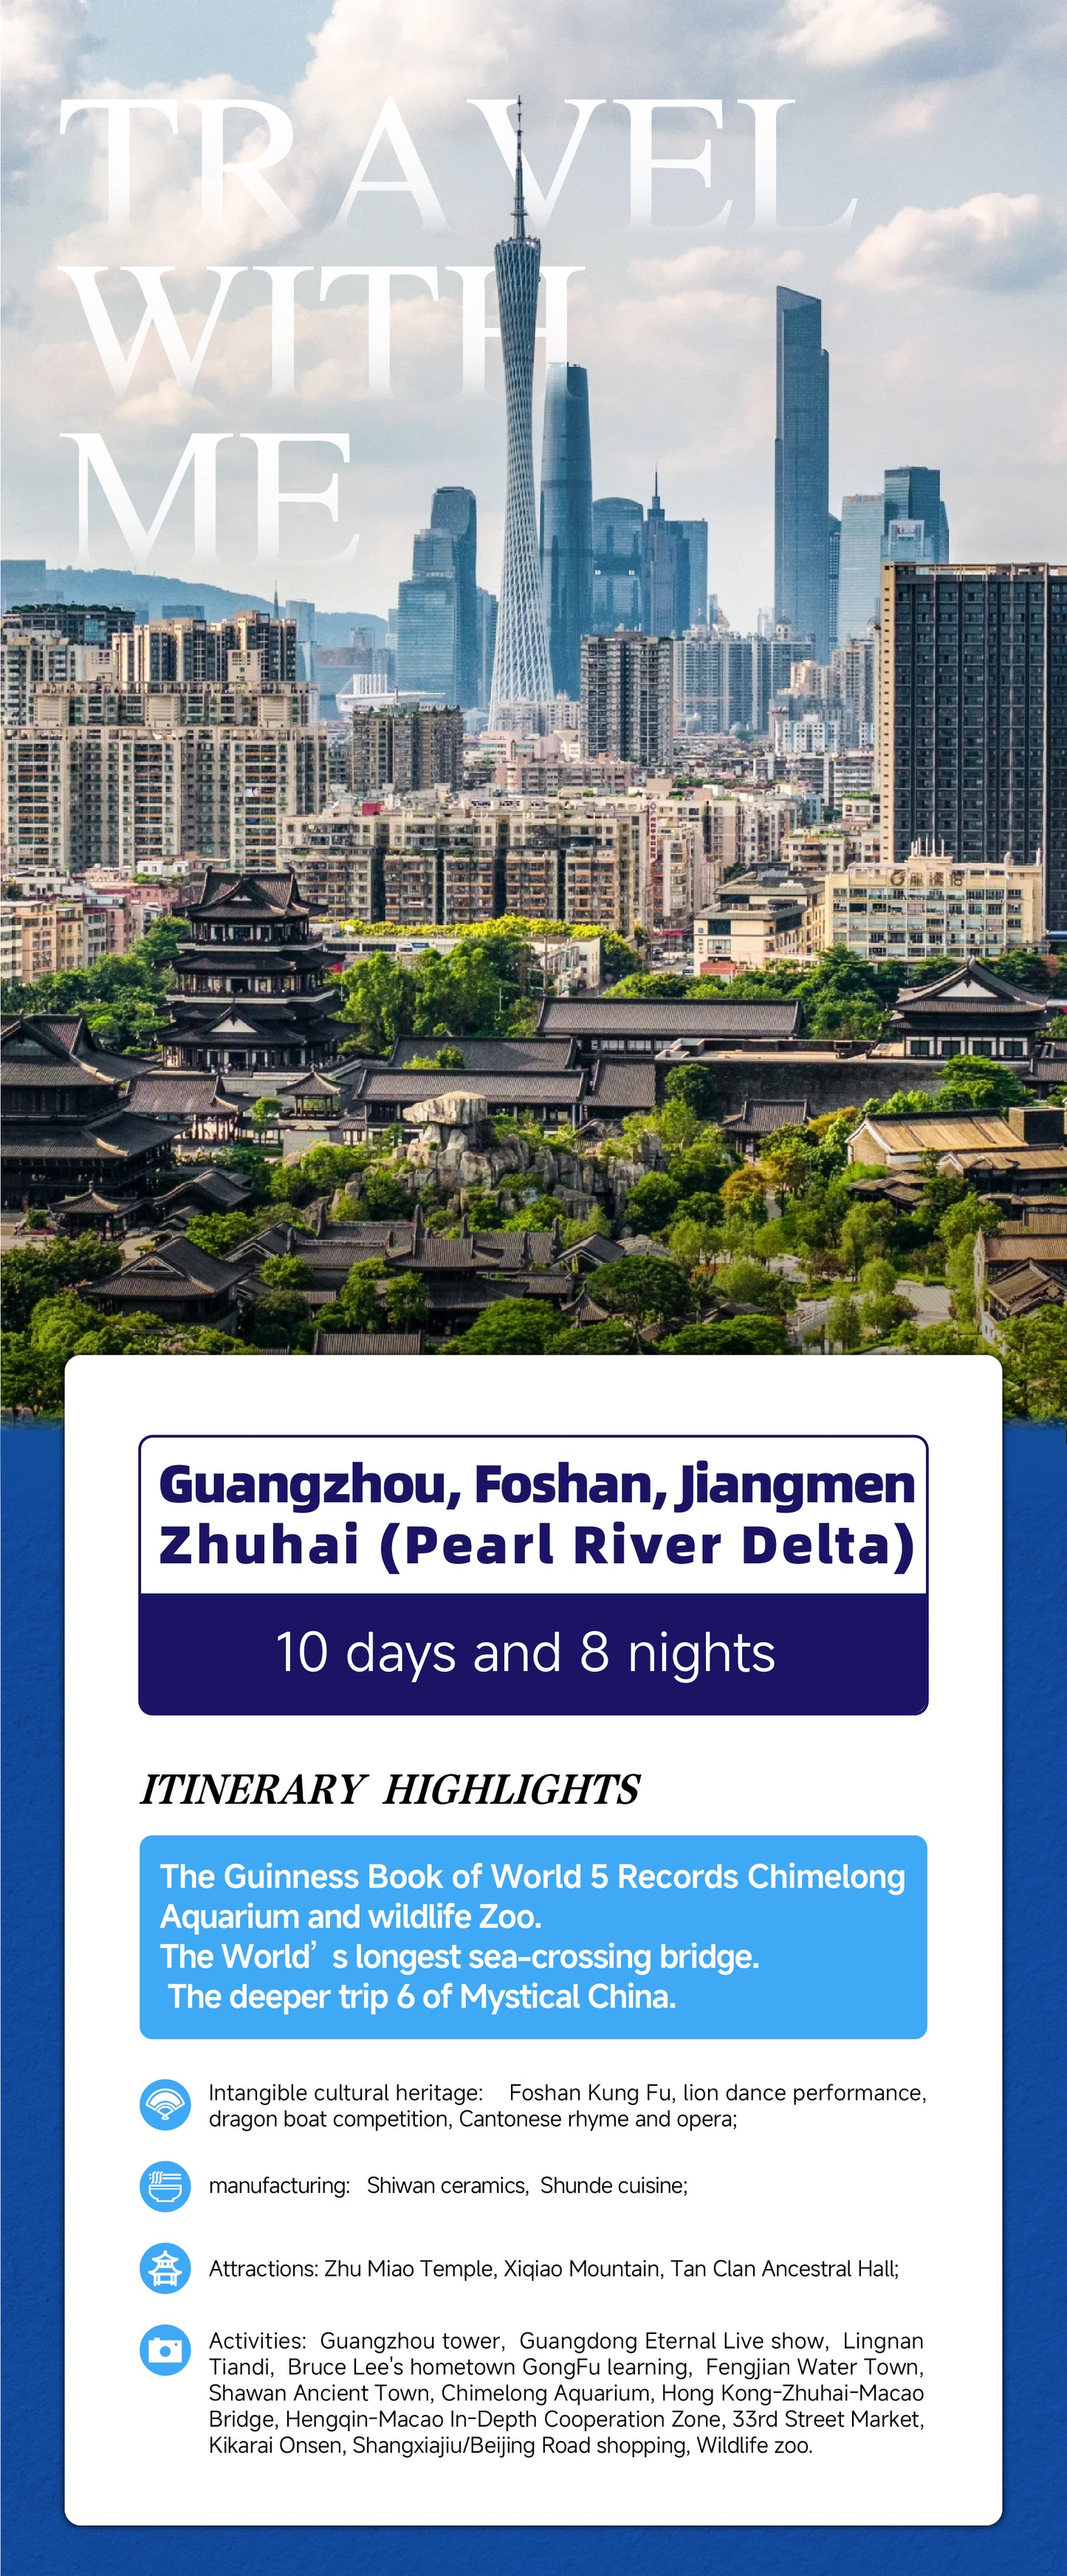 Trip 7: Guangzhou 10 days and 8 nights